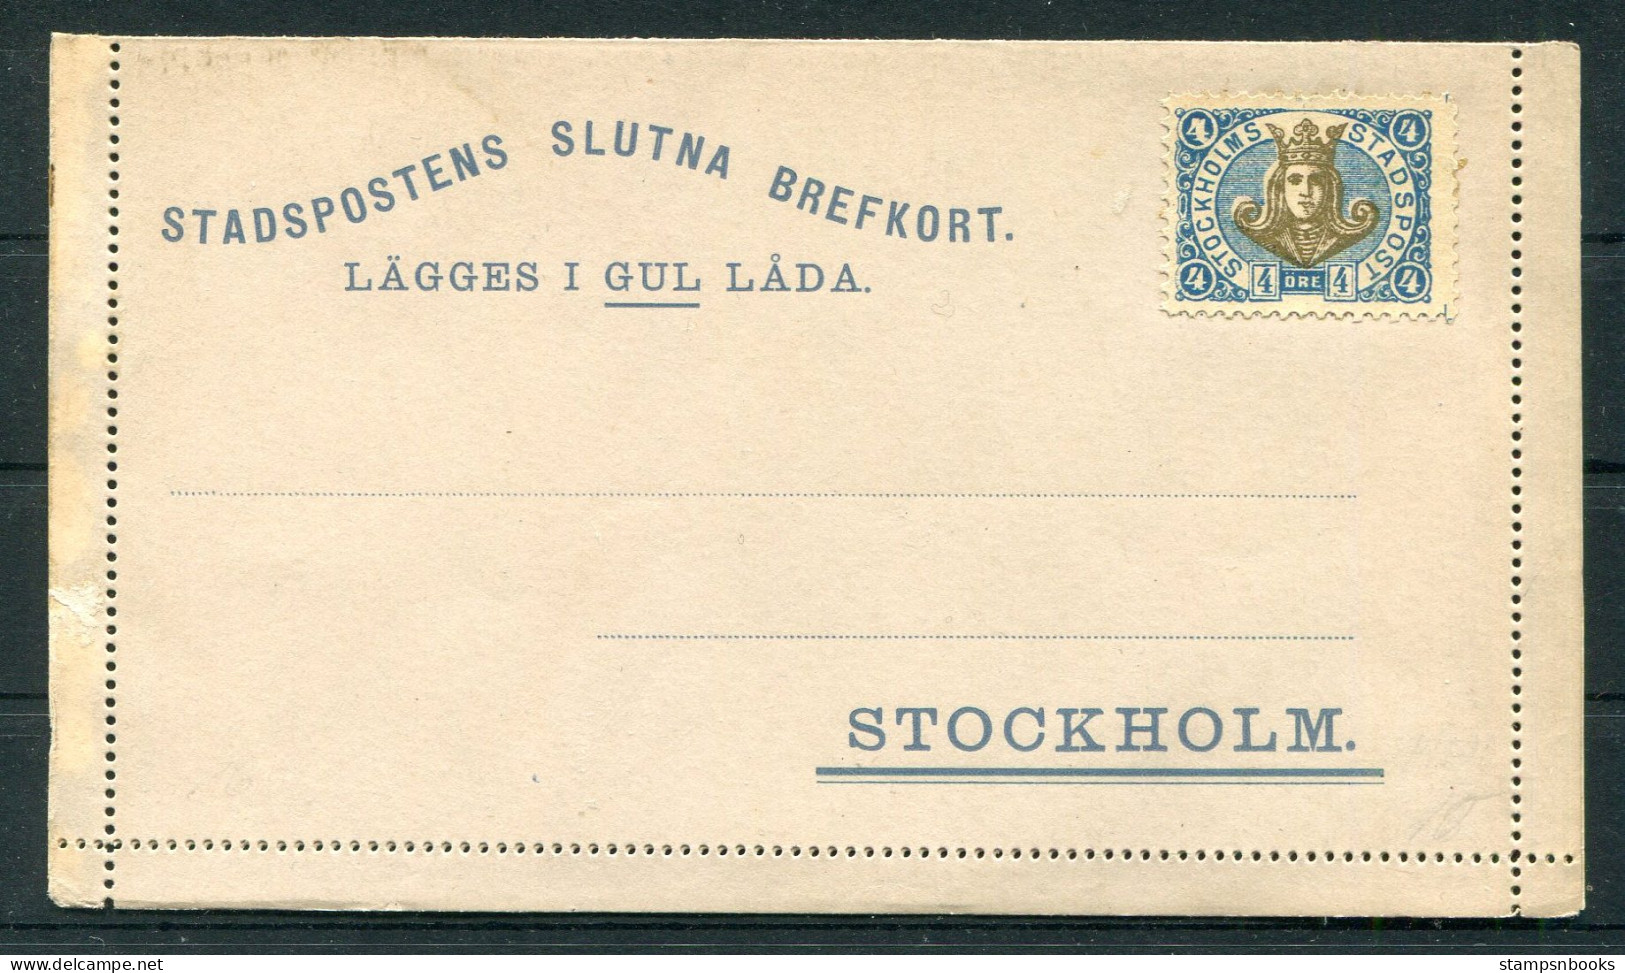 Sweden Stadspostens Slutna Brefkort, Stcokholm Loval Post Lettercard Stationery - Local Post Stamps